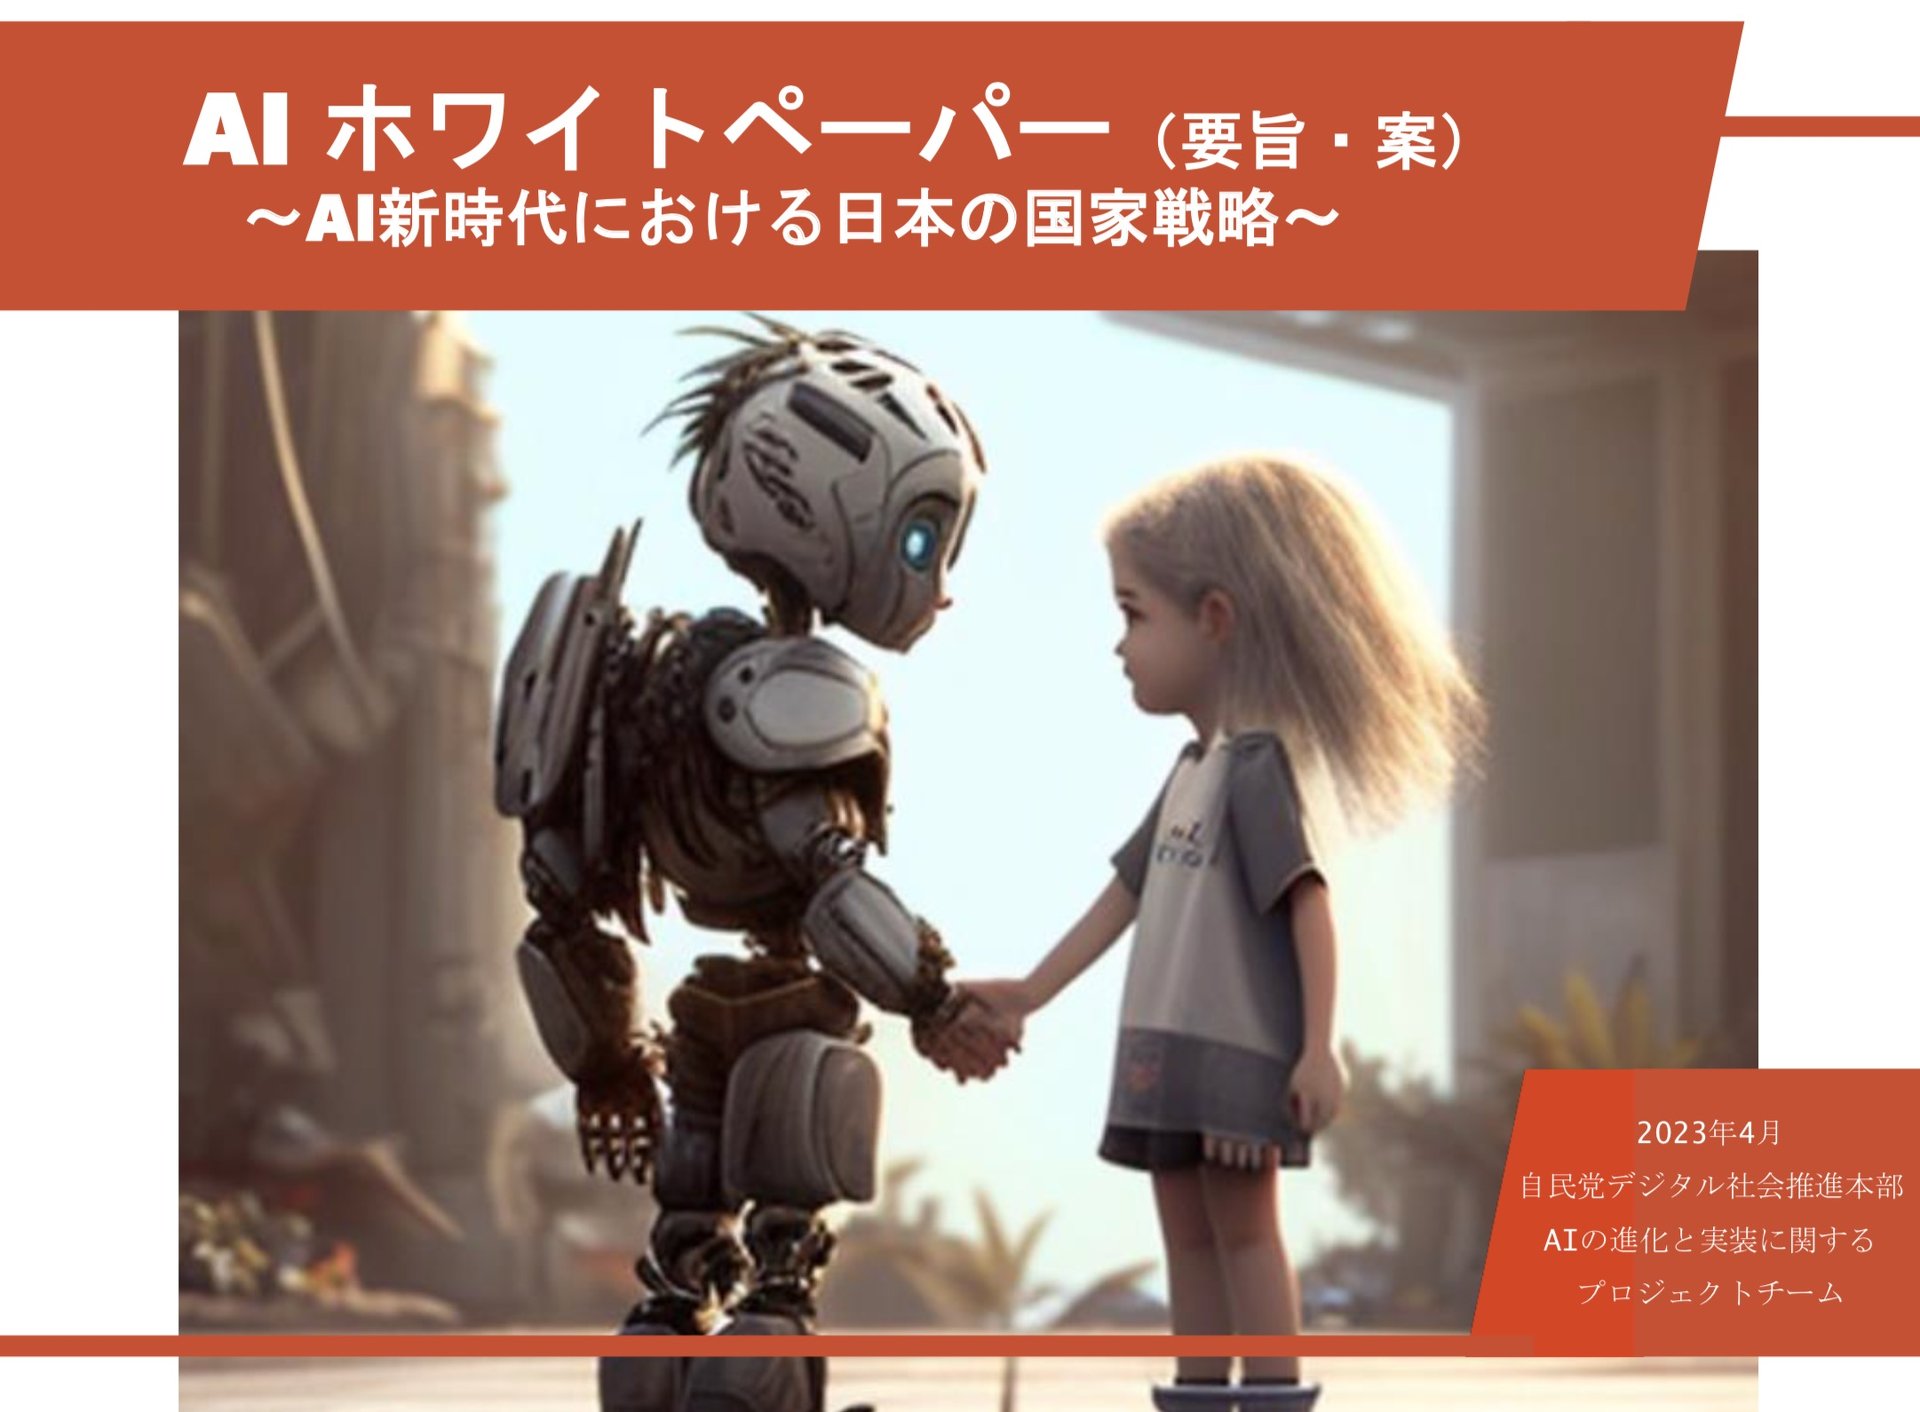 [閒聊] 日本提出AI白皮書 想讓世界看到日本